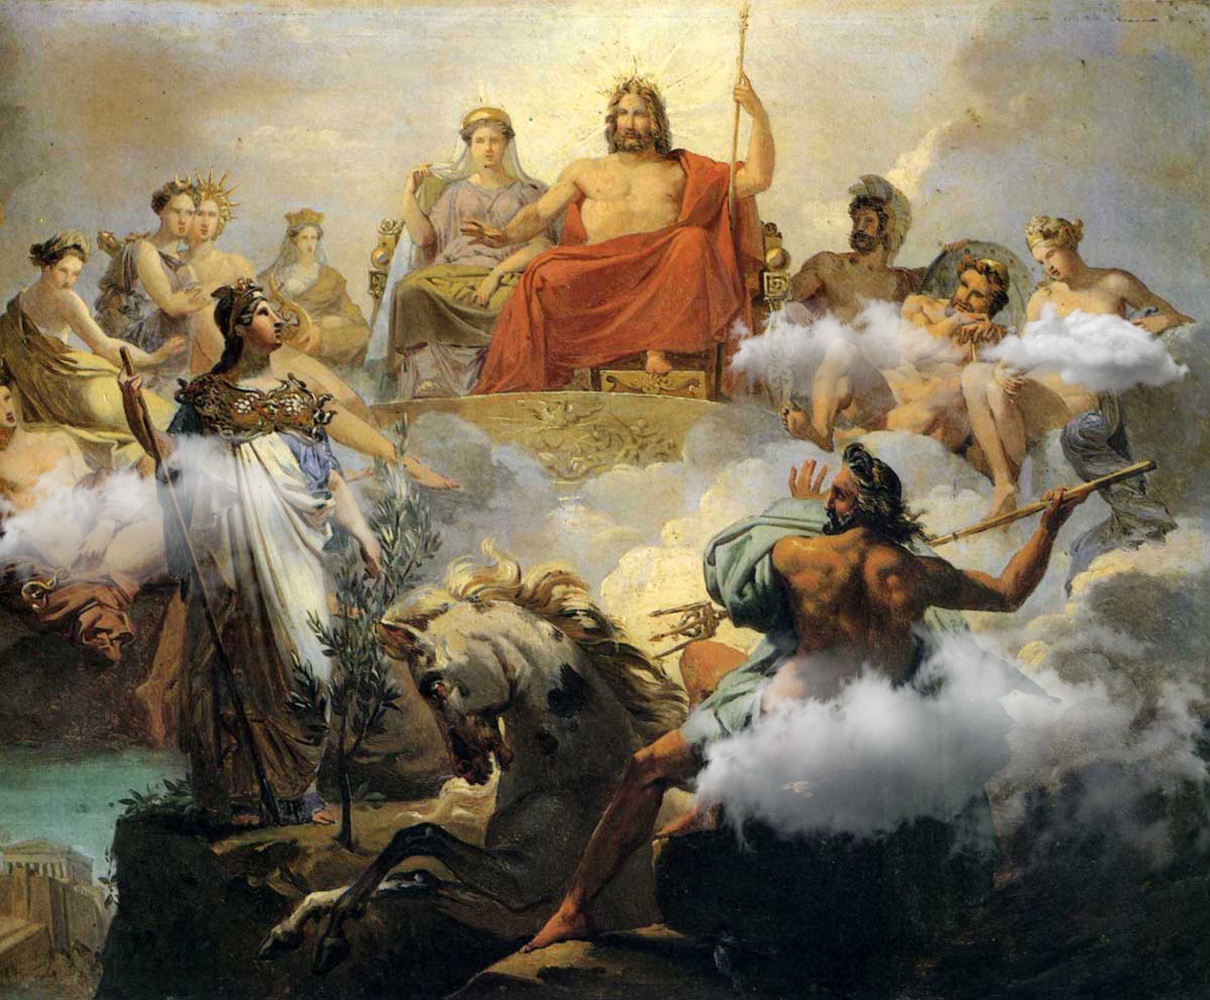 Зевс мифология древней Греции